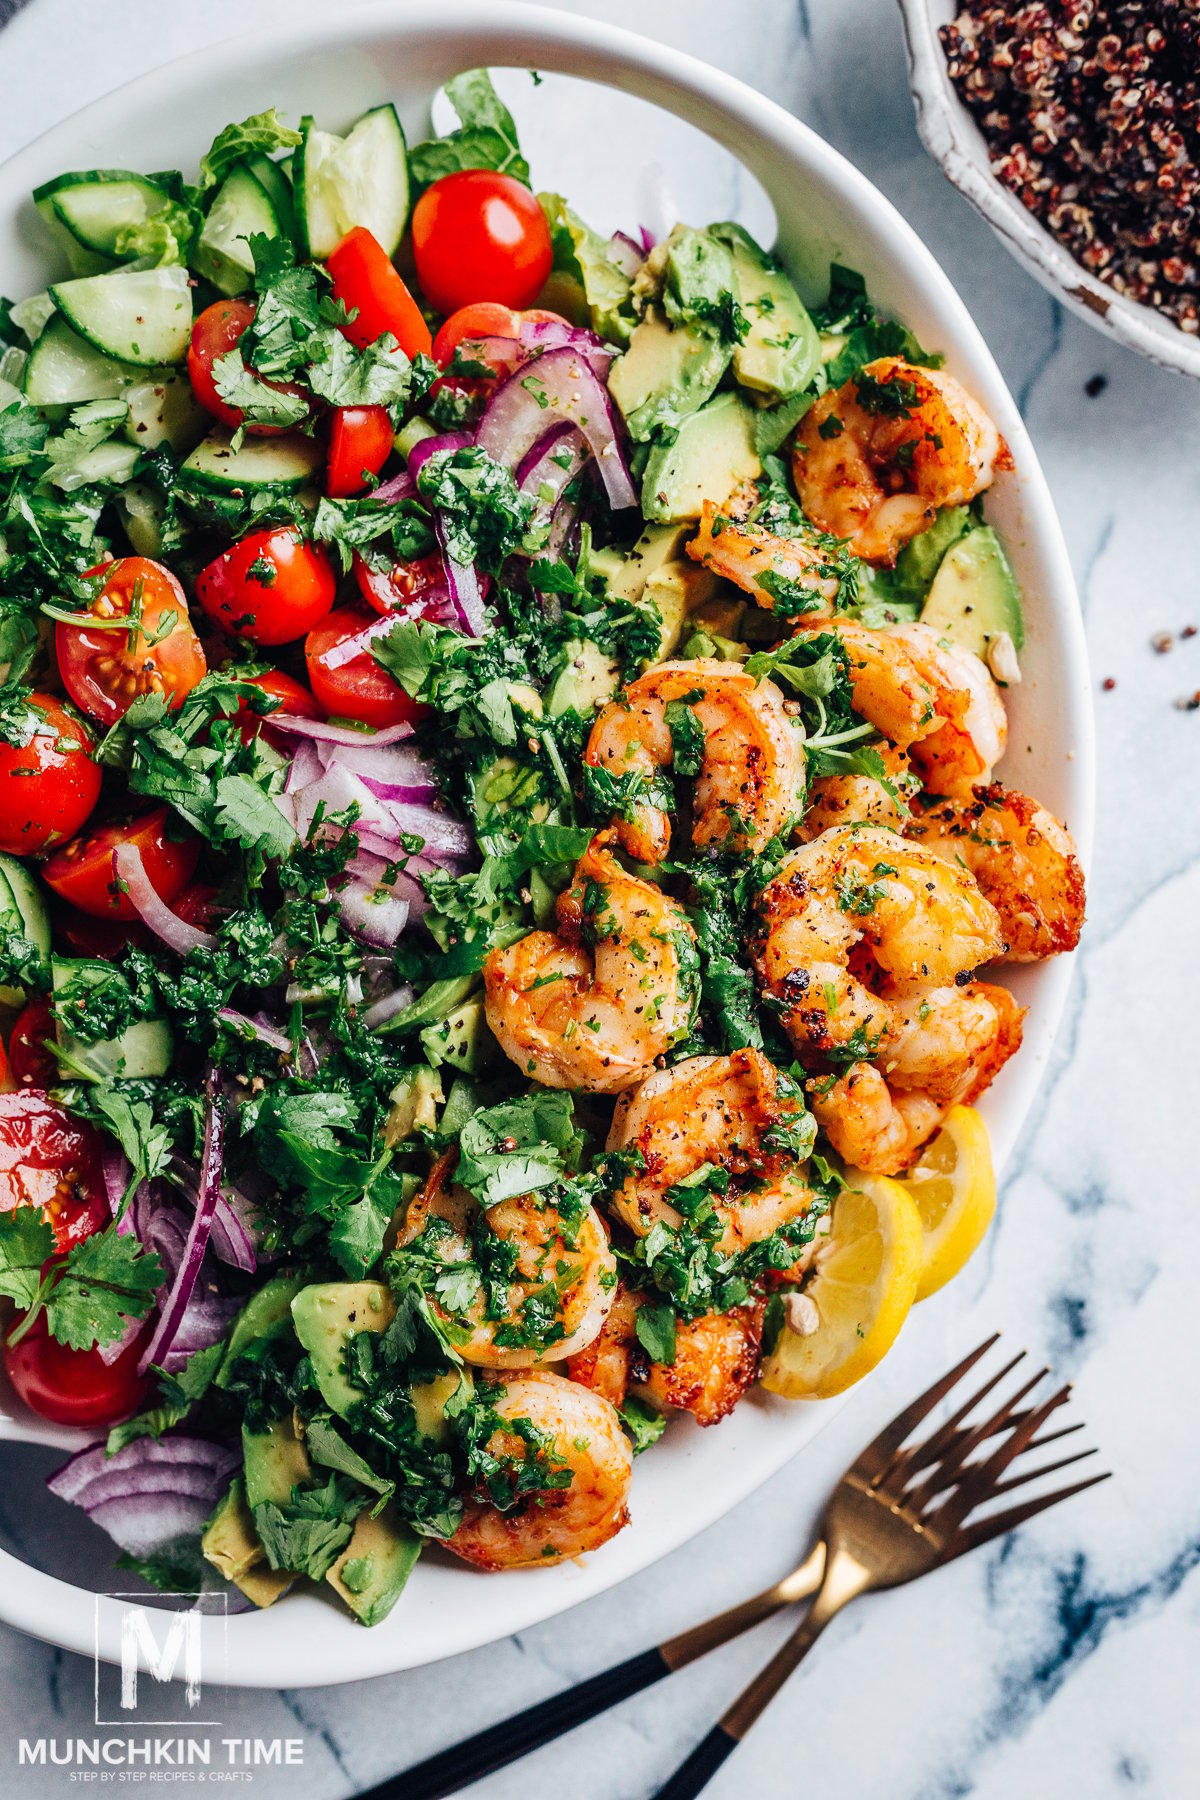 Shrimp Avocado Salad with Quinoa